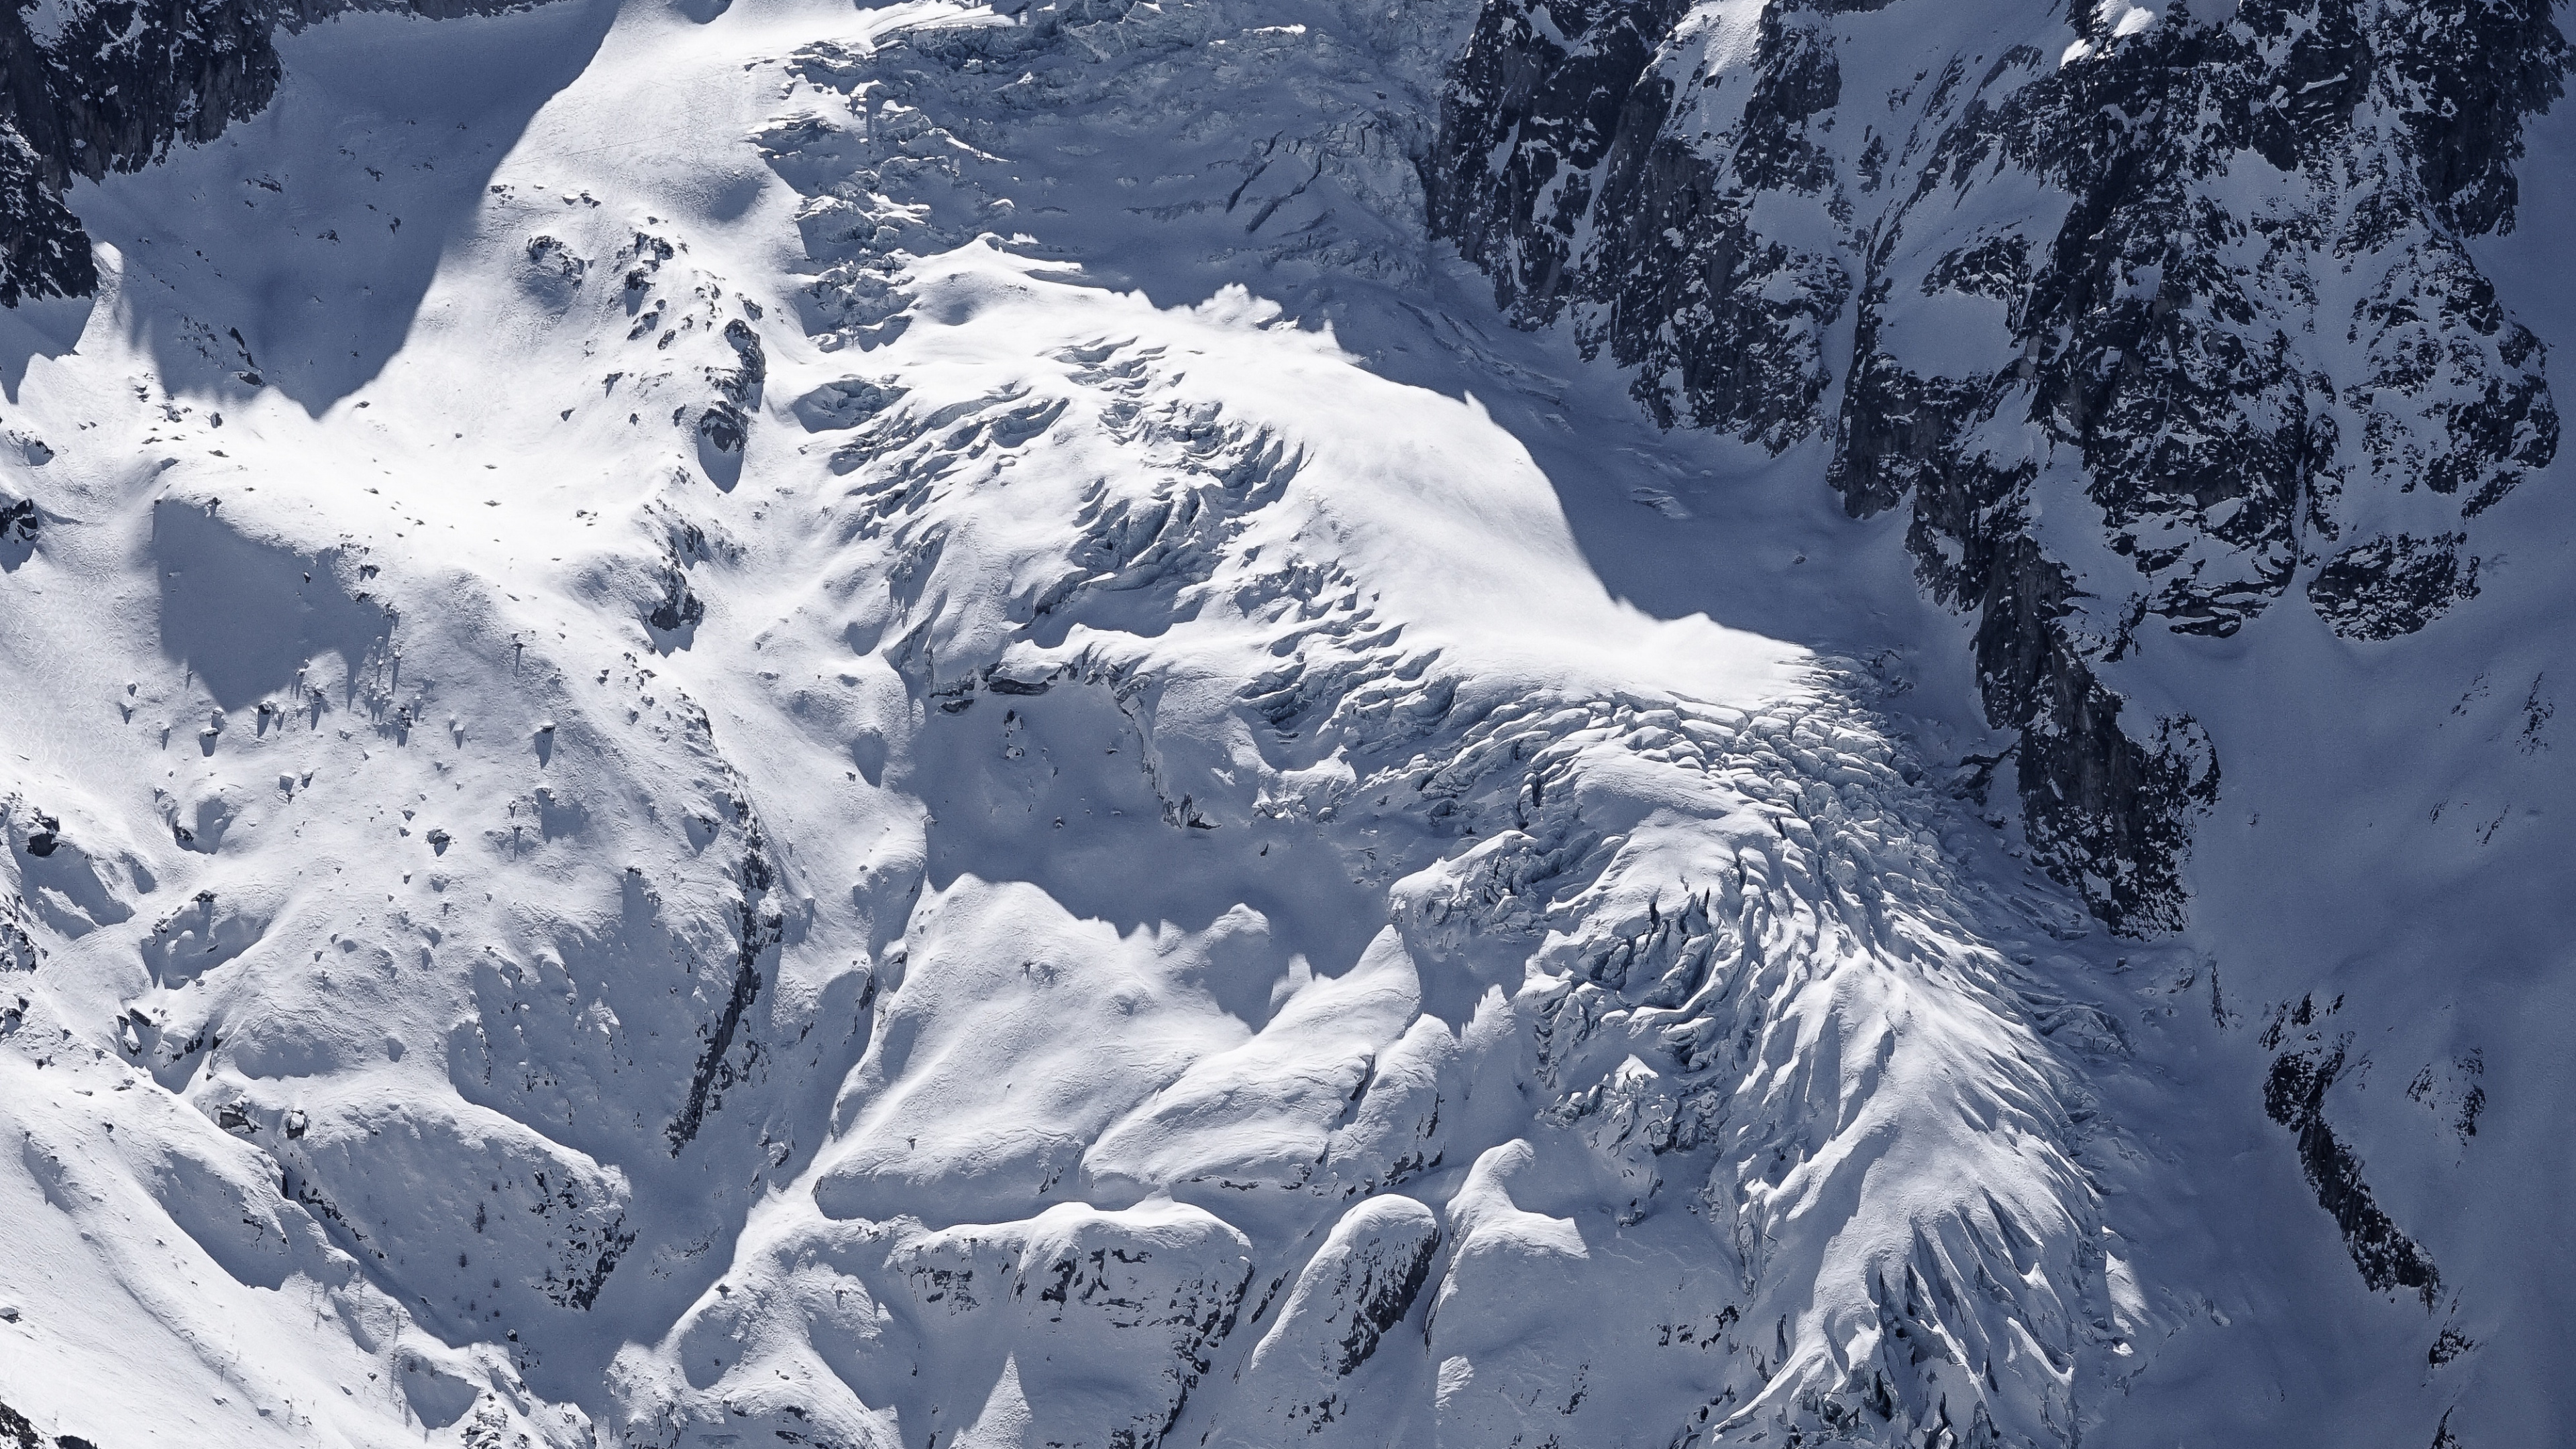 Las Formaciones Montañosas, Montaña, Glaciar de Terreno, Macizo, Alpes. Wallpaper in 3840x2160 Resolution